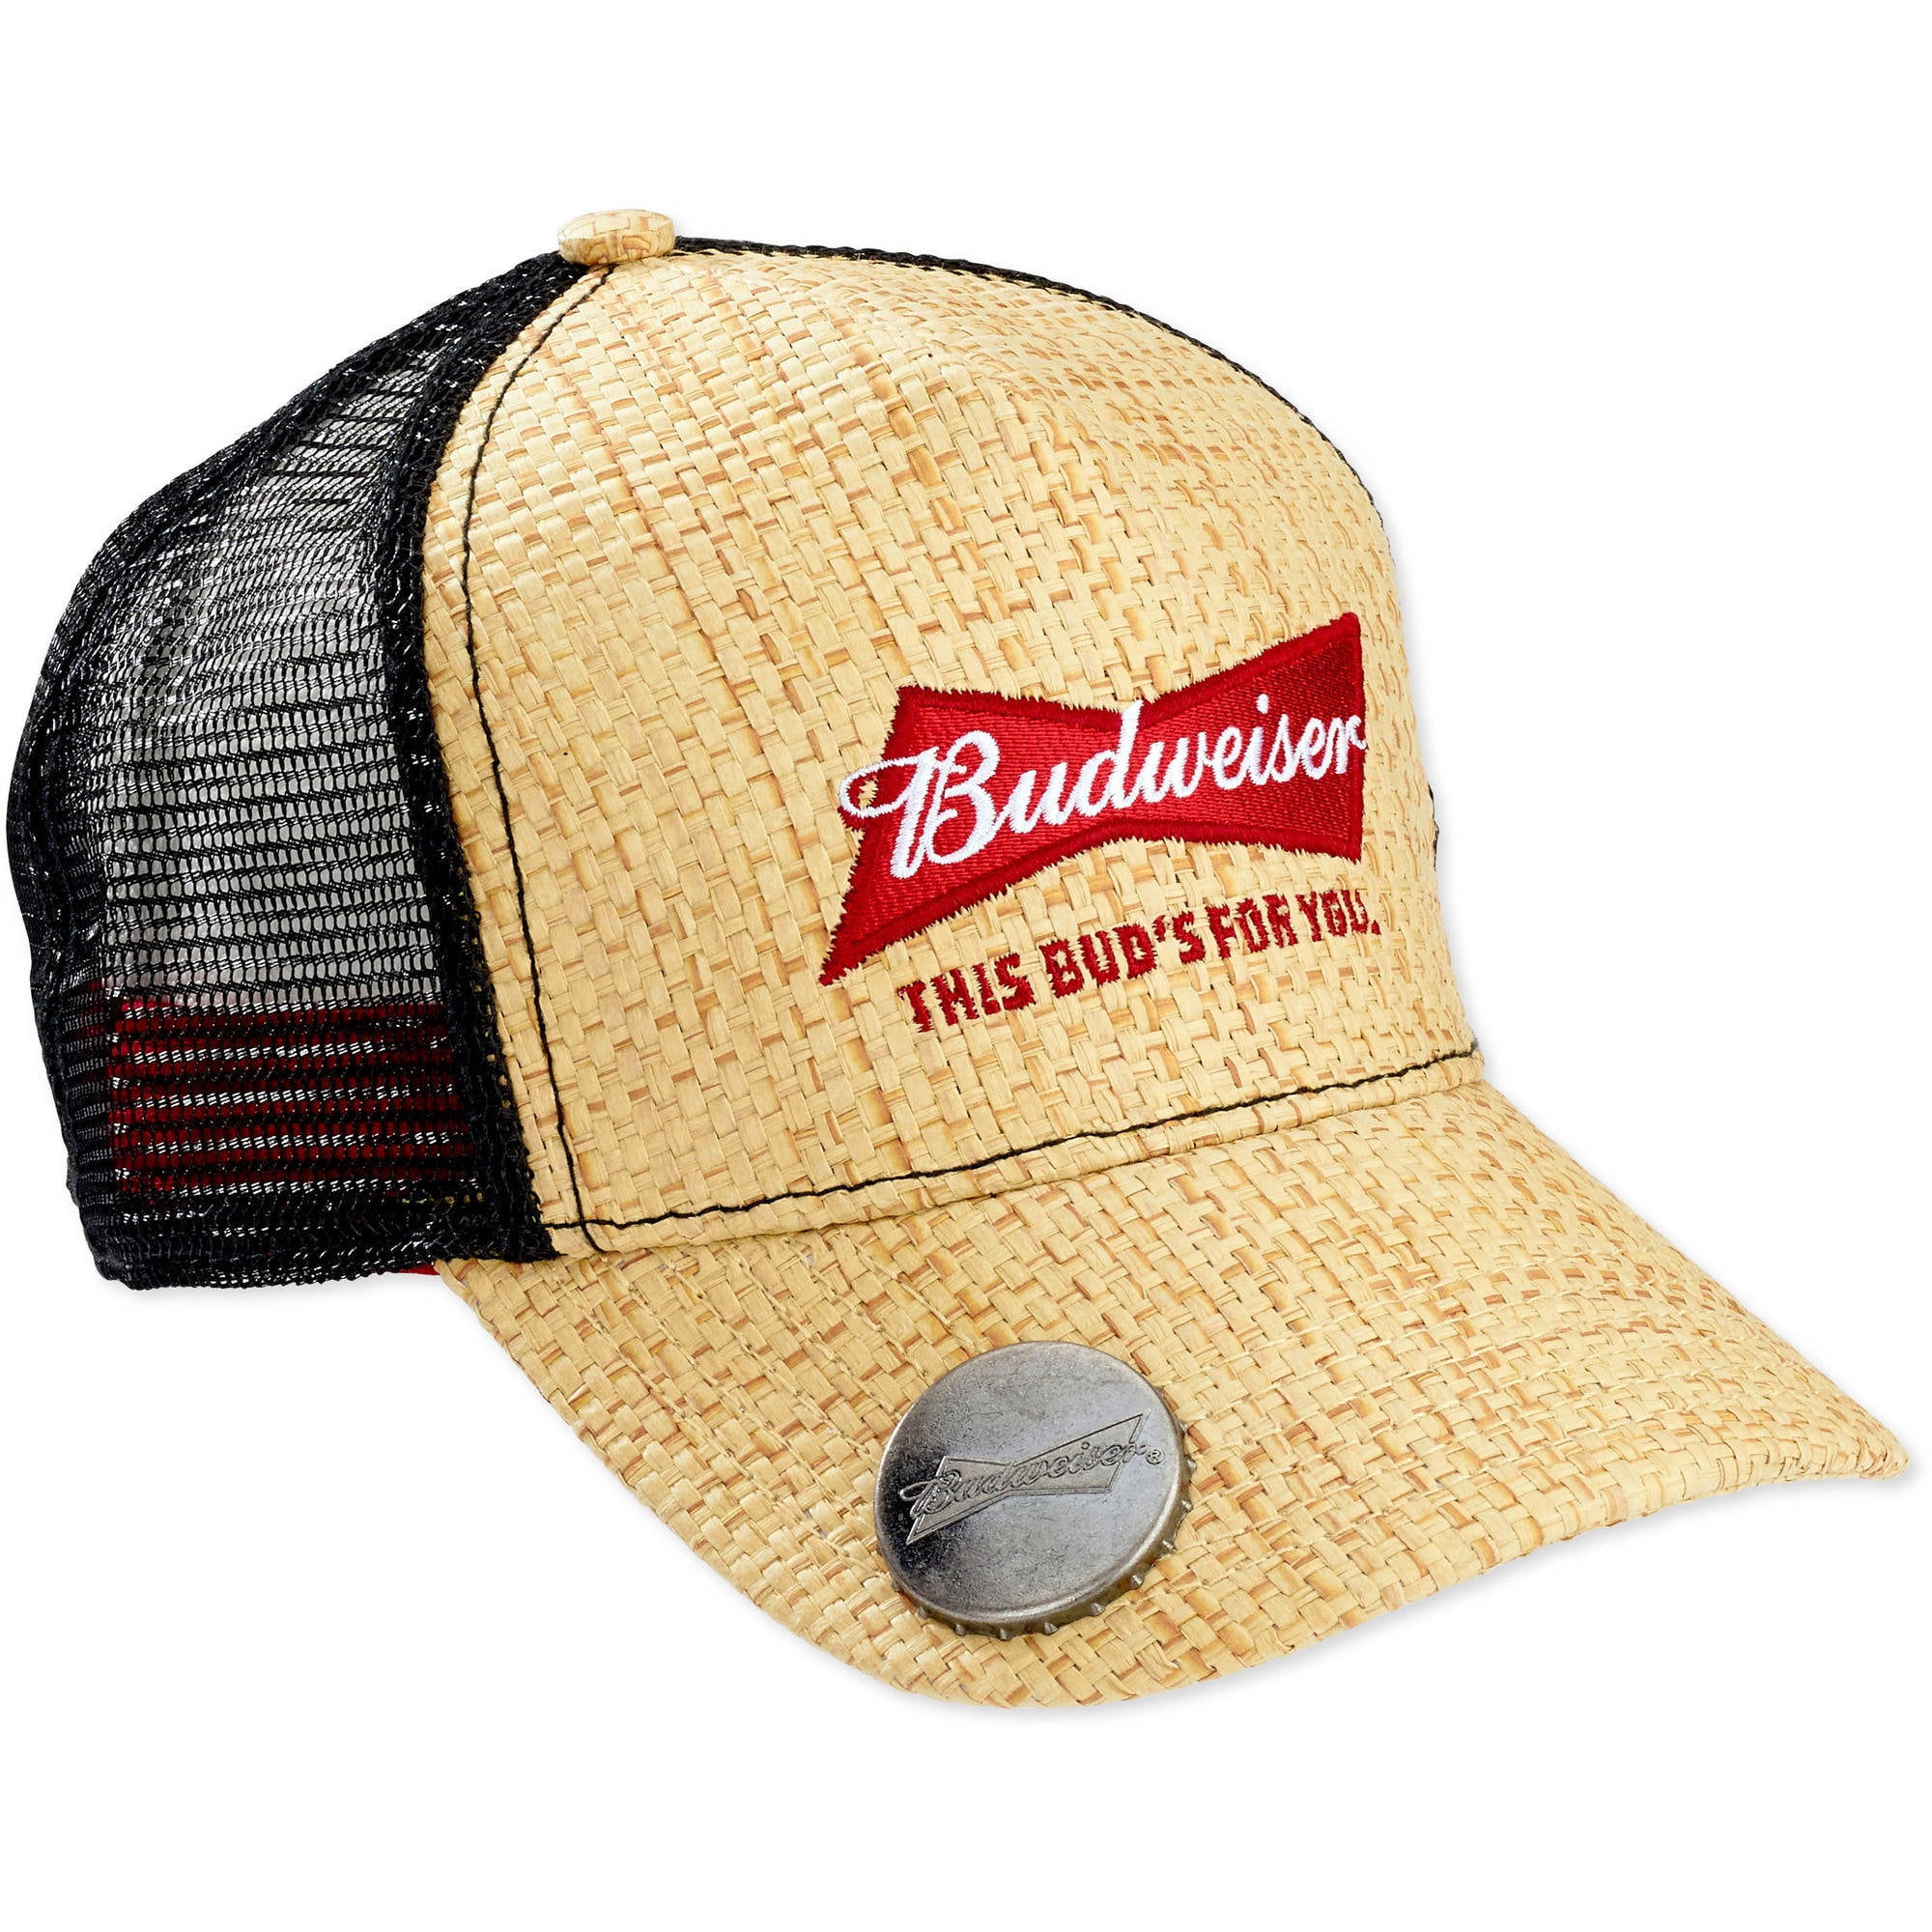 LICENSE - Men's Budweiser Straw Baseball Cap With Bottle ...